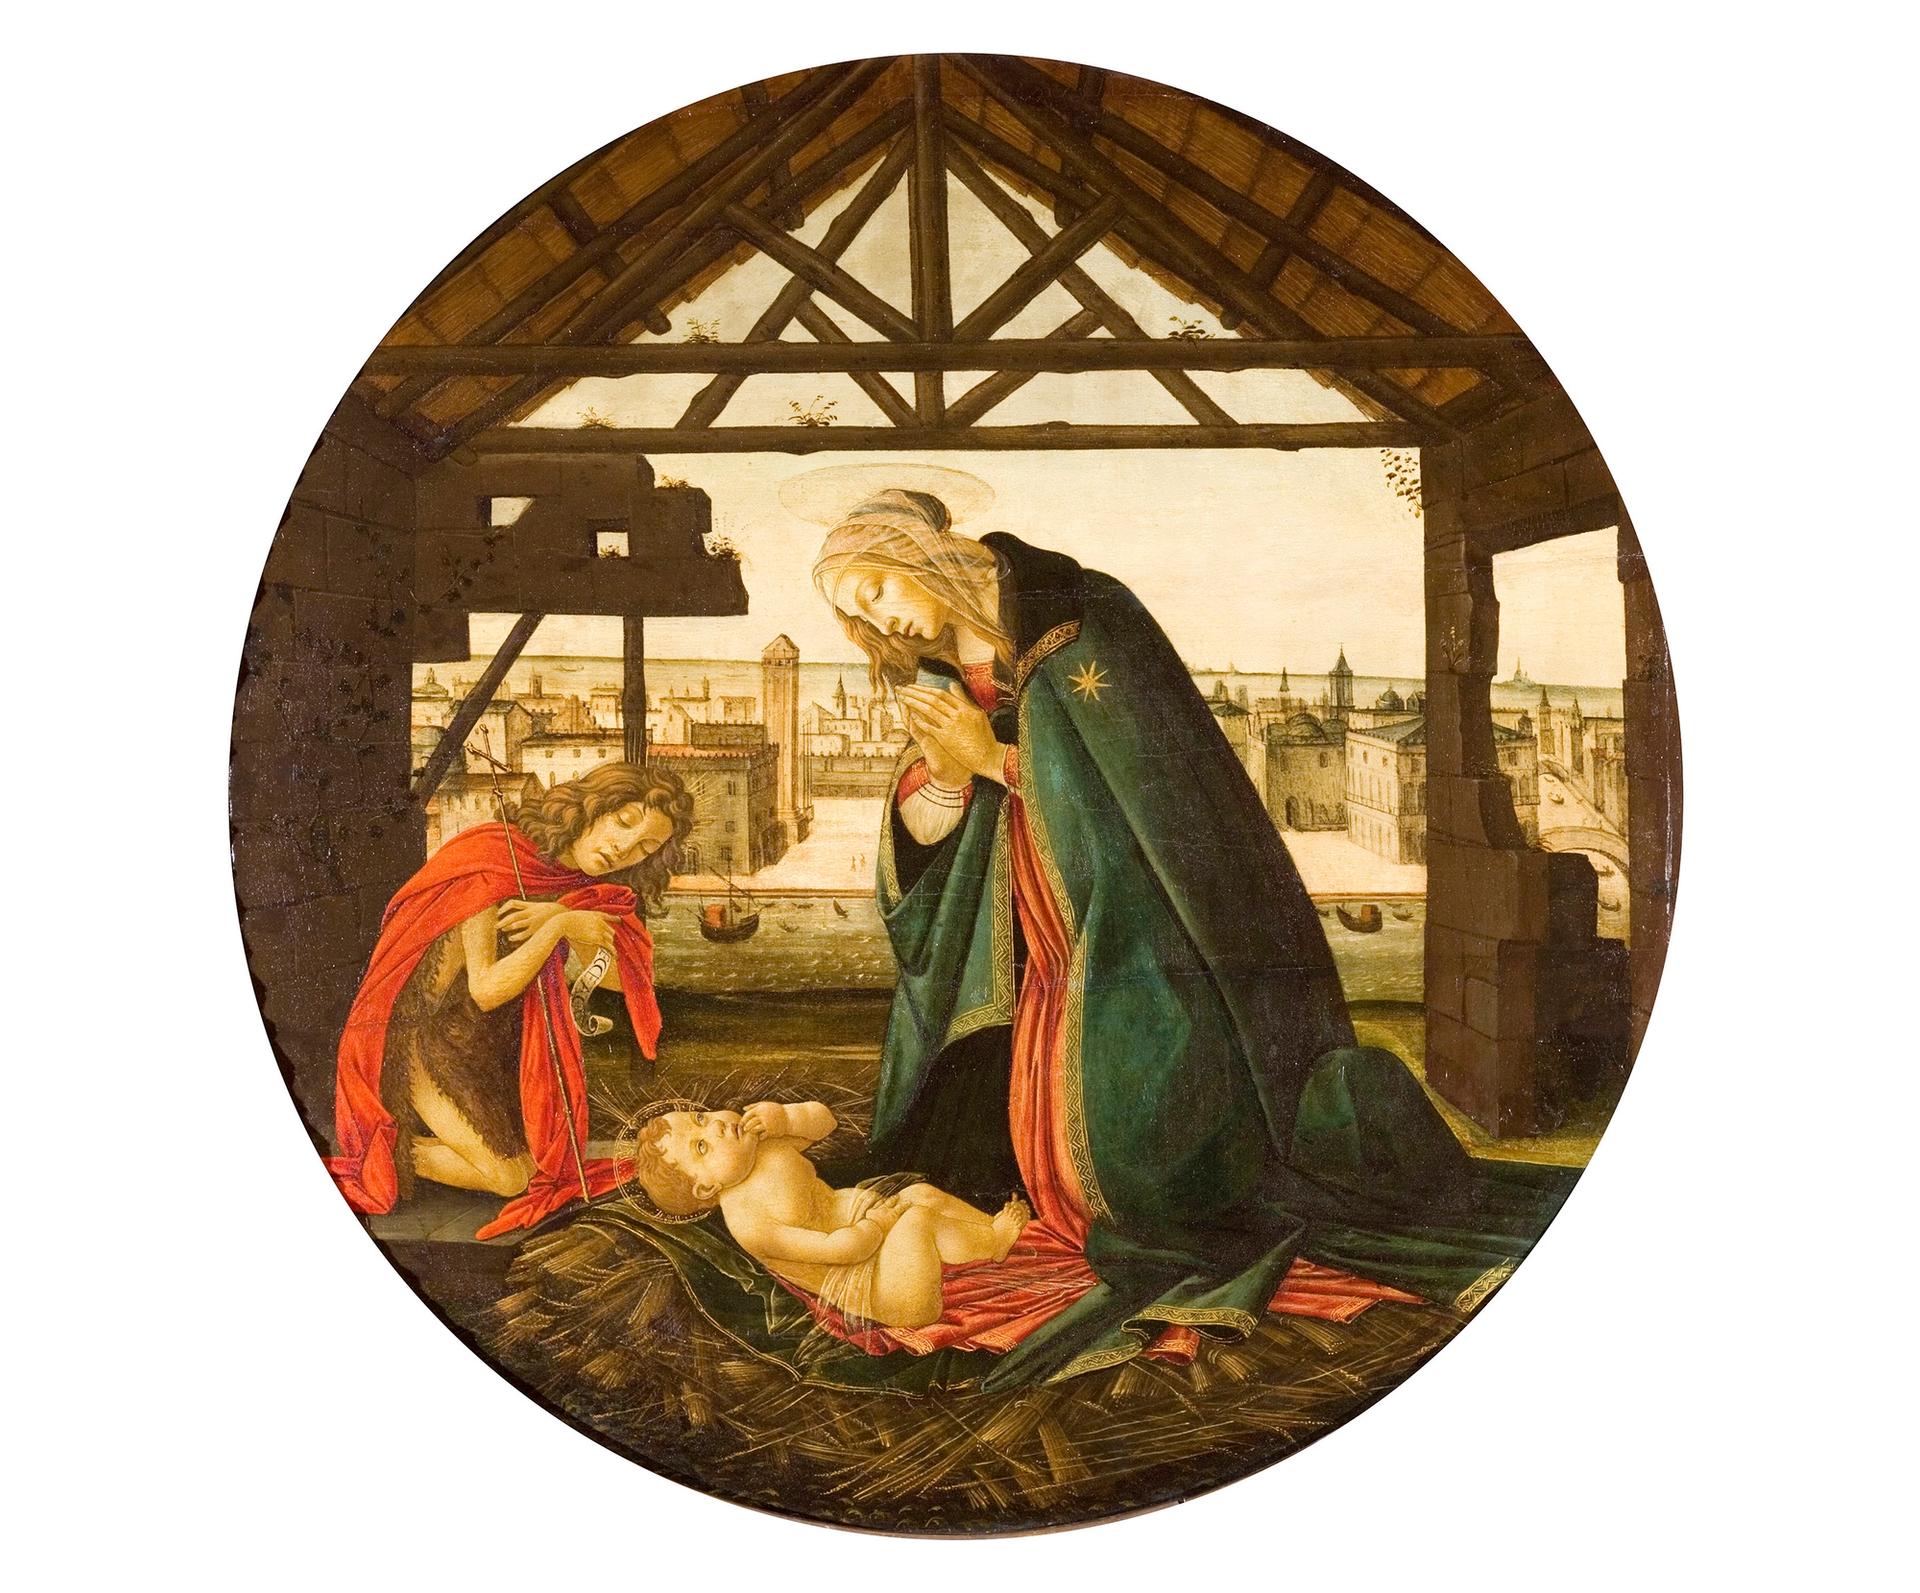 Workshop of Botticelli's Nativity In Front of a Maritime City (after 1490) Institut de France, Musée Jacquemart-André, Paris © Studio Sébert Photographes